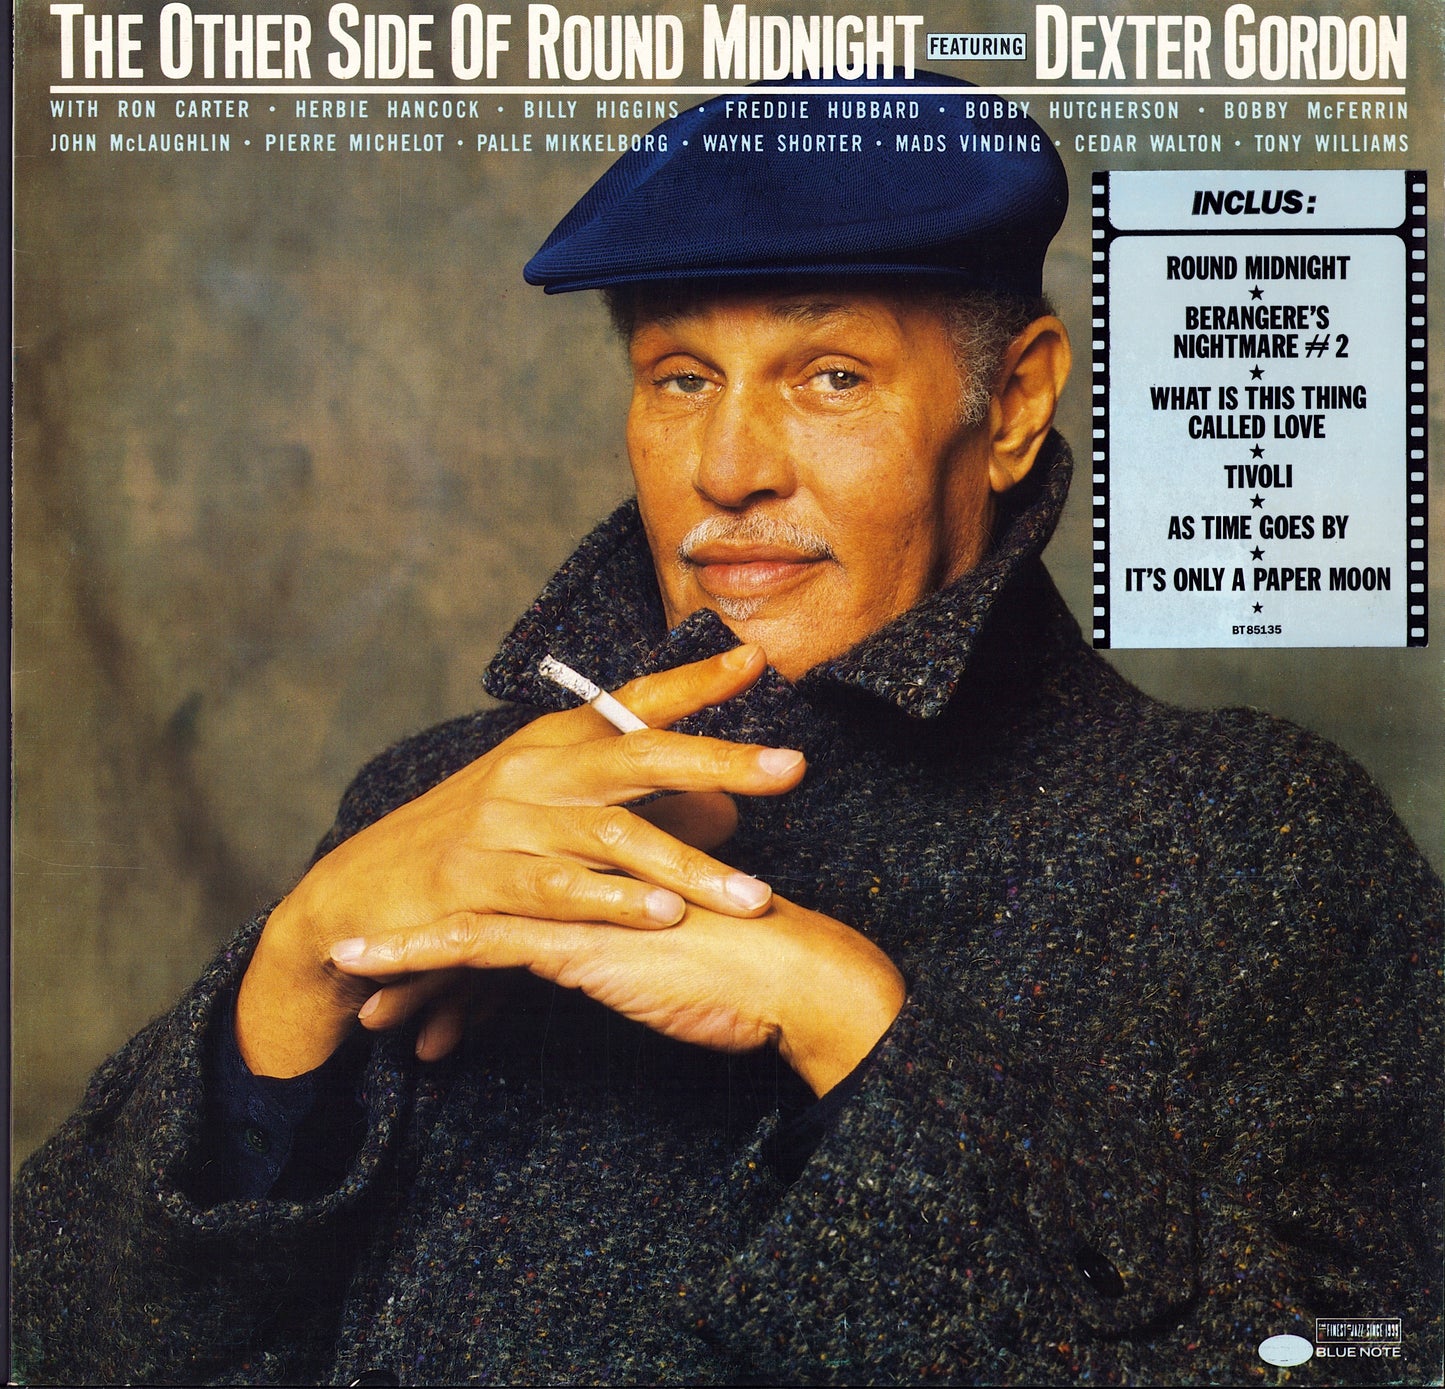 Dexter Gordon - The Other Side Of Round Midnight Vinyl LP